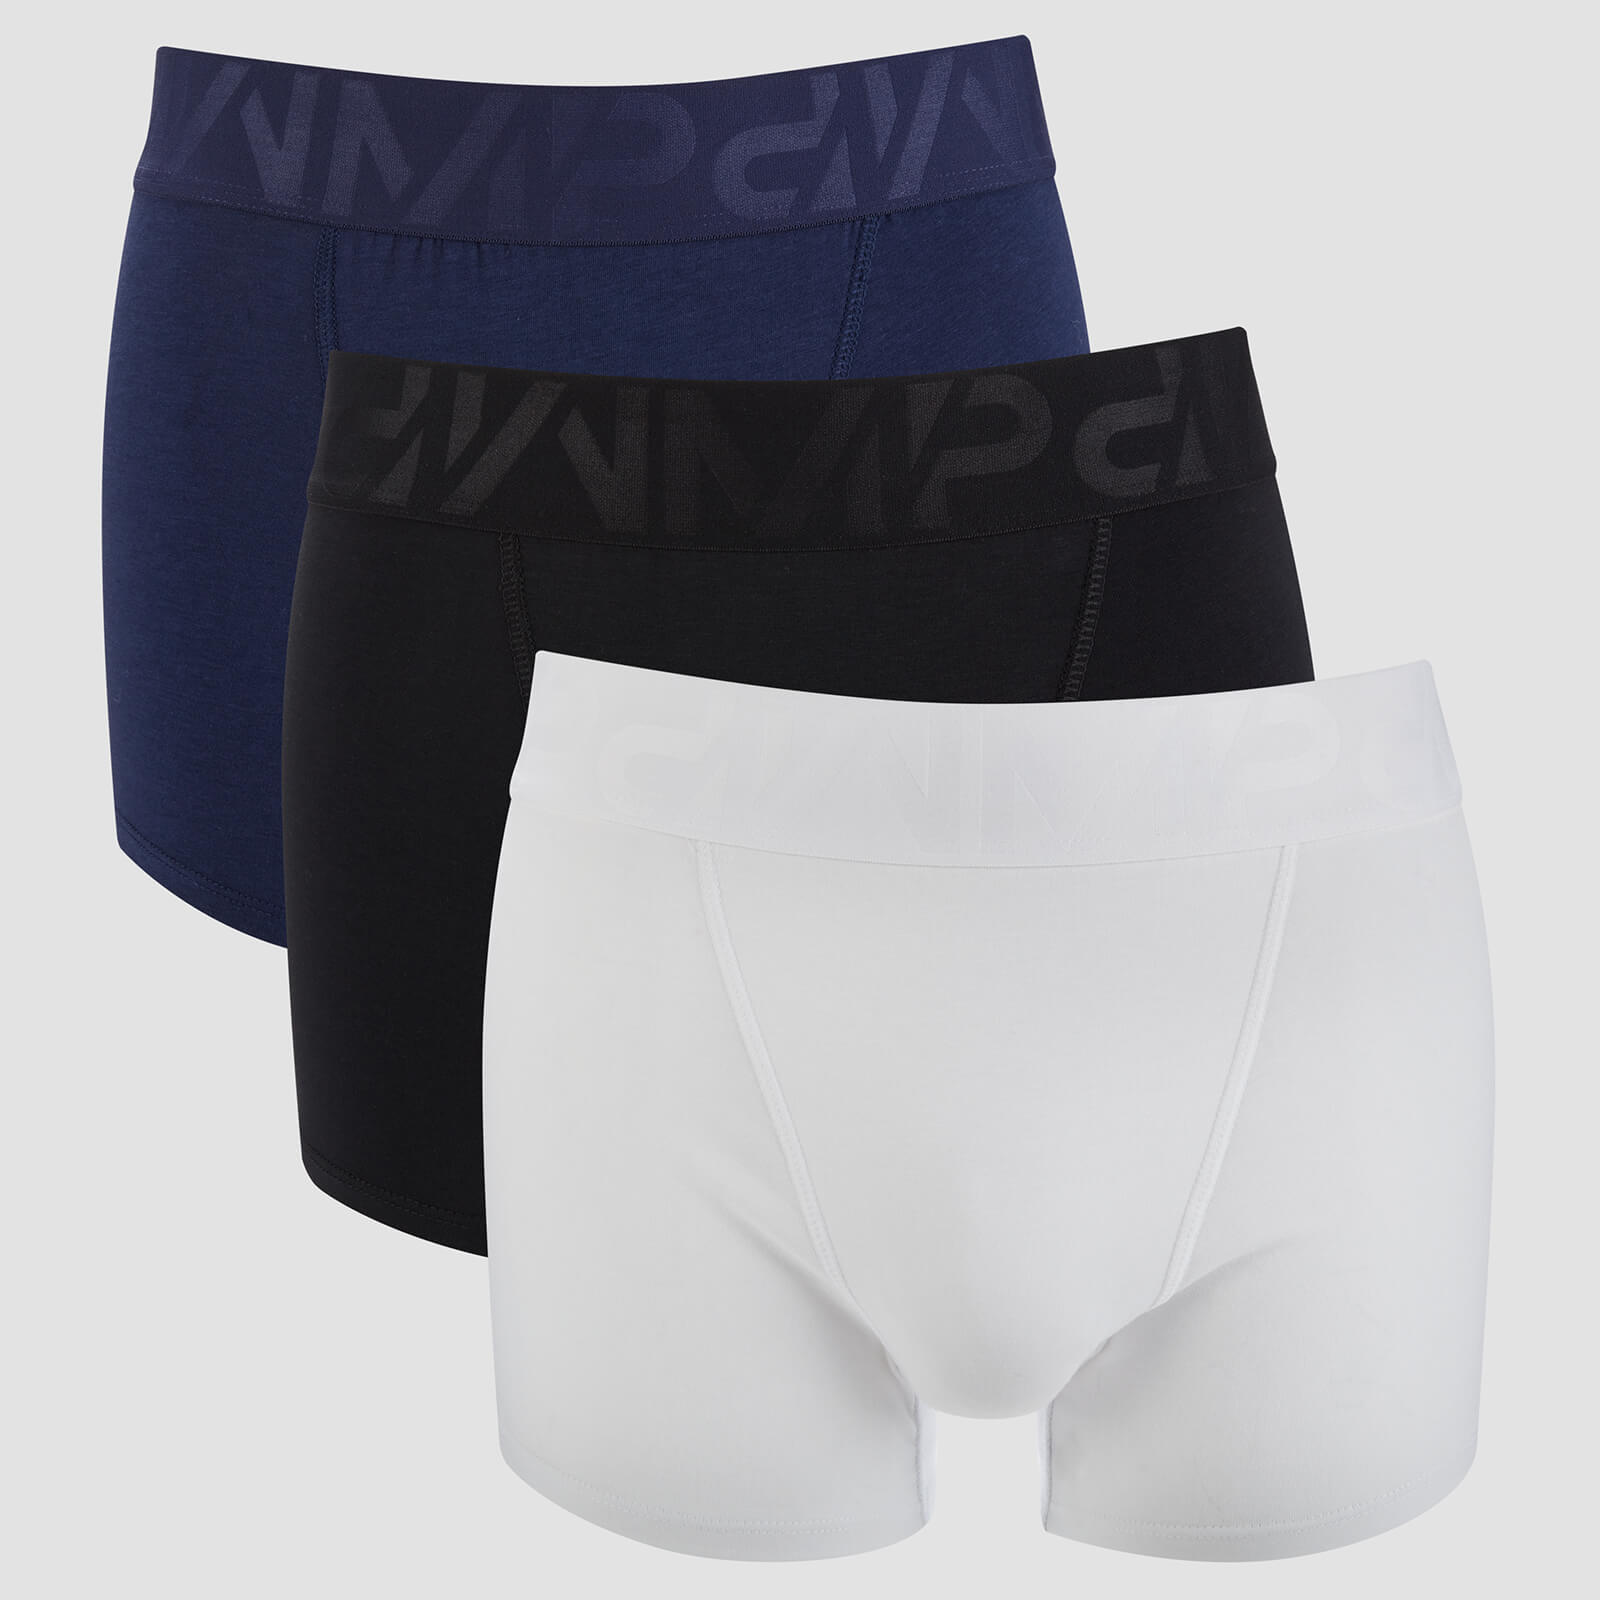 Pack de 2 Boxers Desportivos Para Homem - Preto/Branco/Azul Marinho